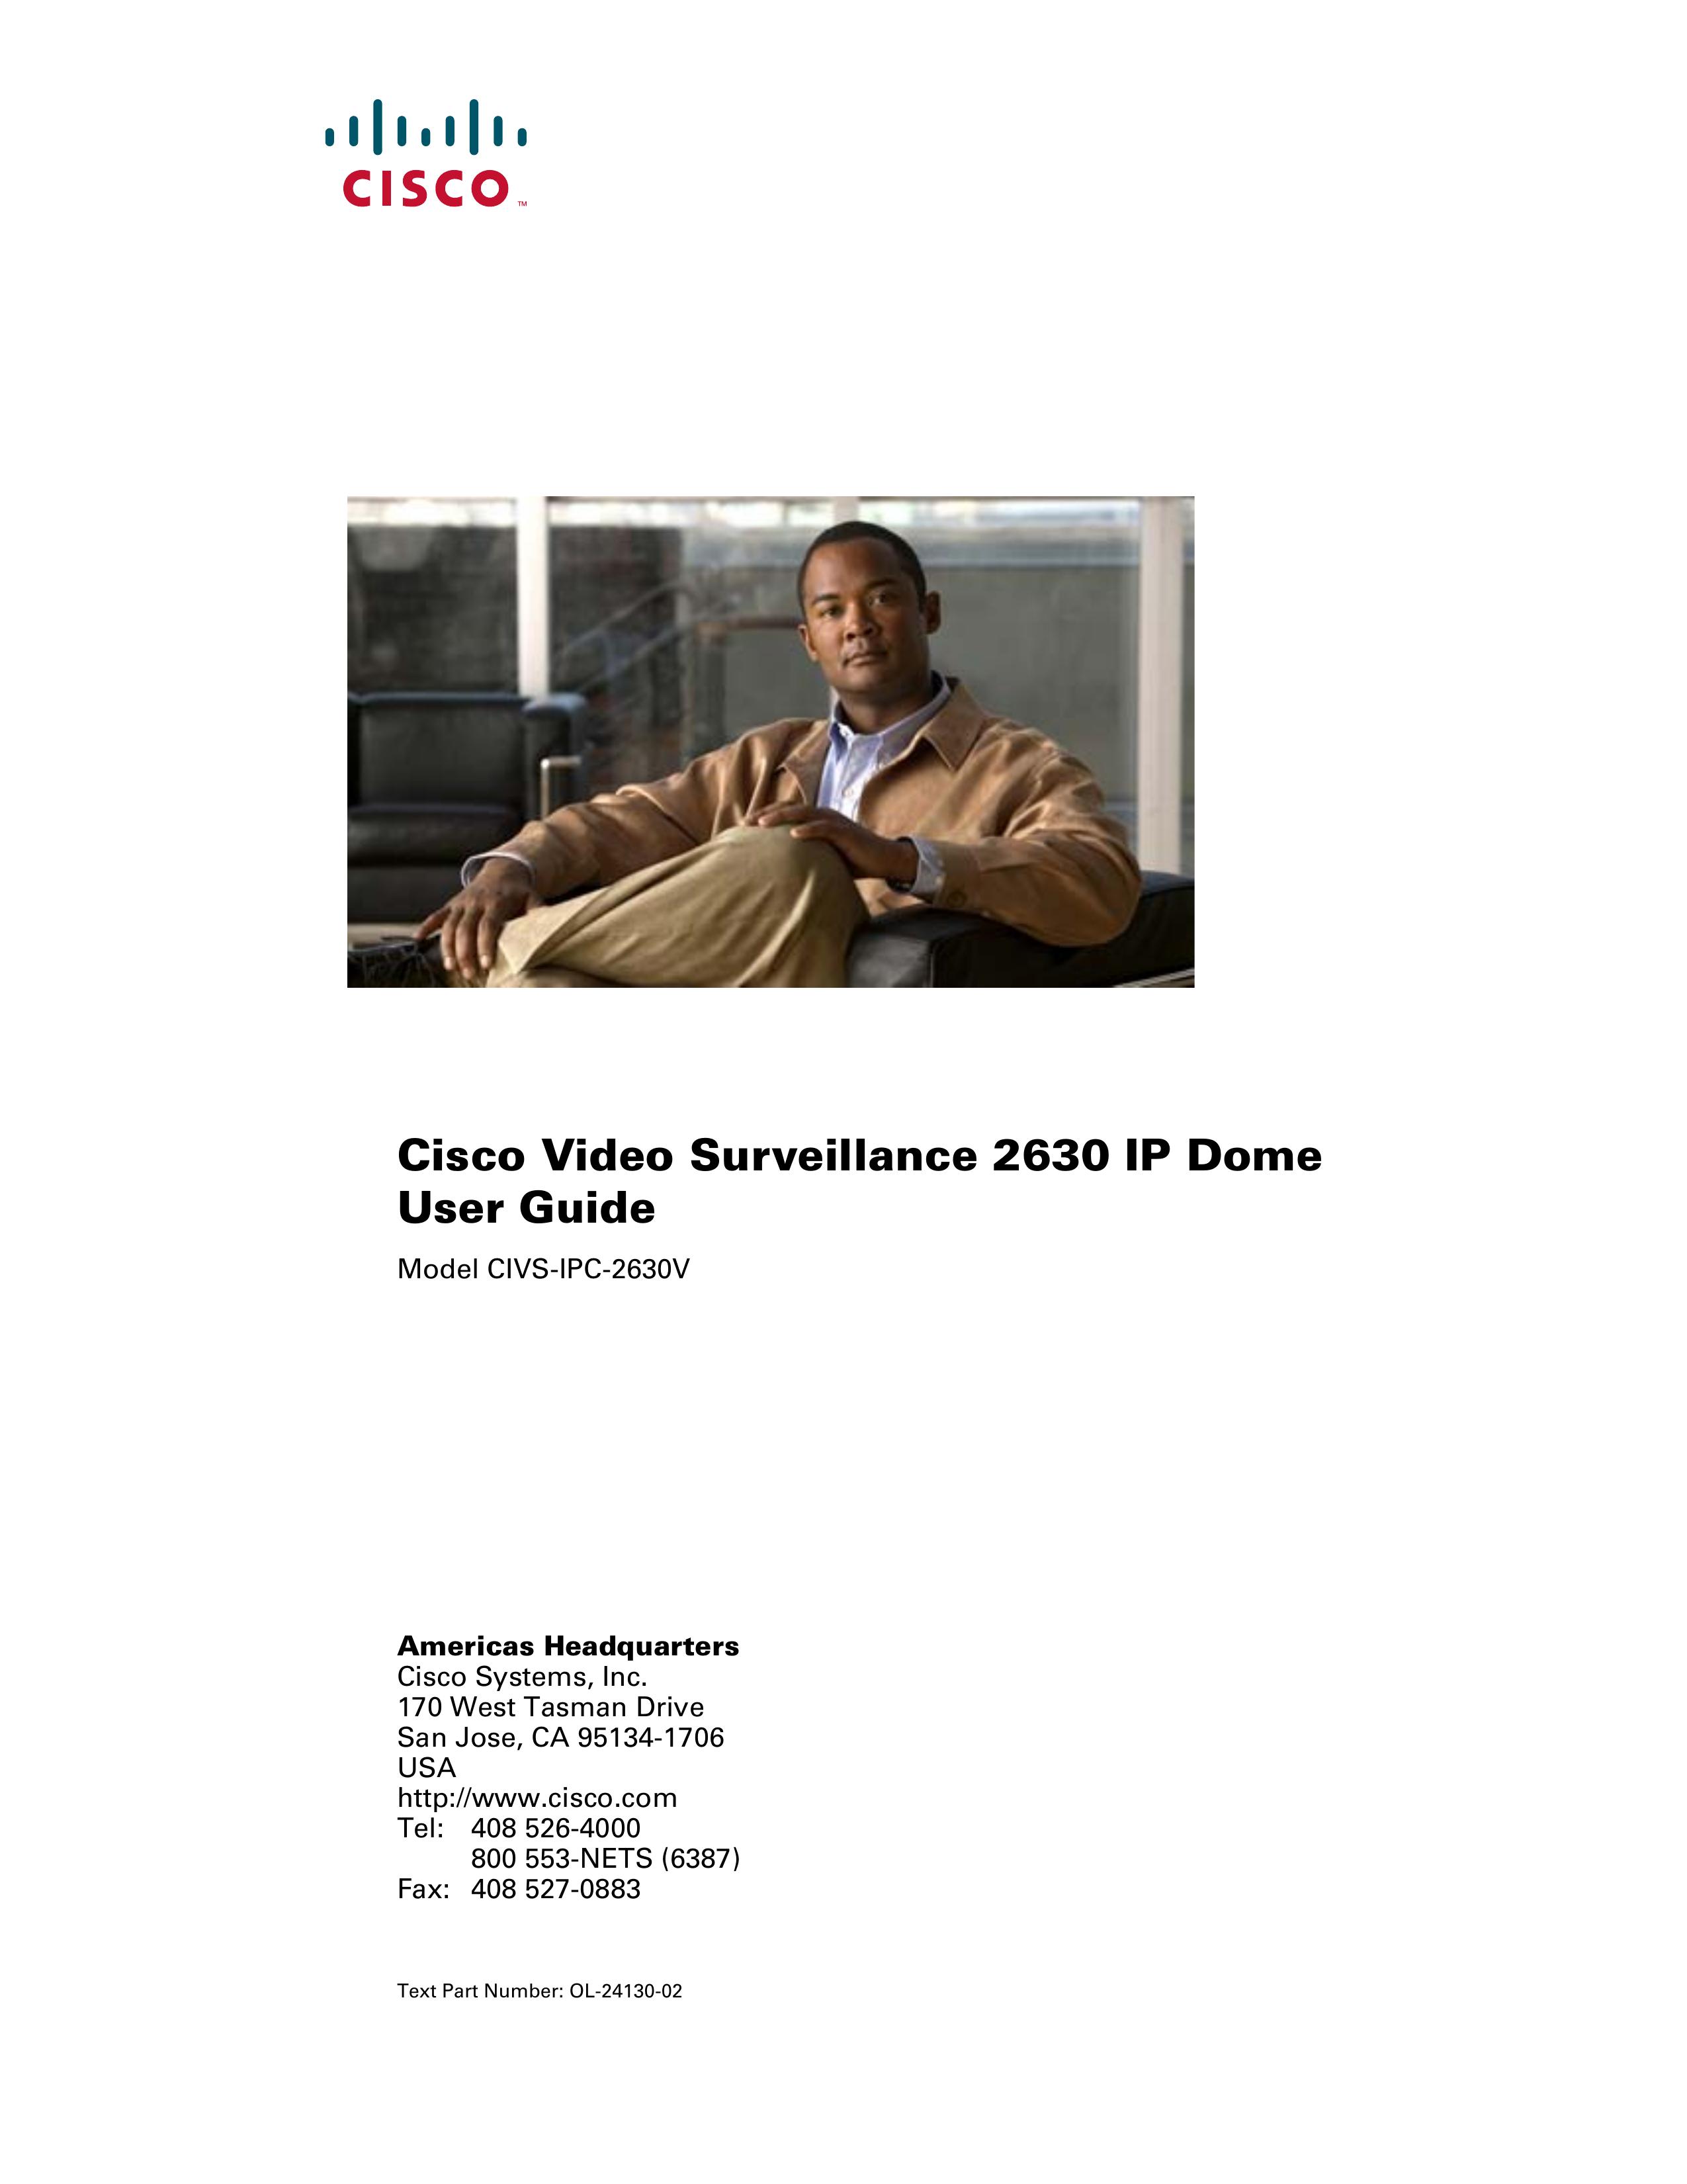 Cisco Systems CIVS-IPC-2630V Security Camera User Manual